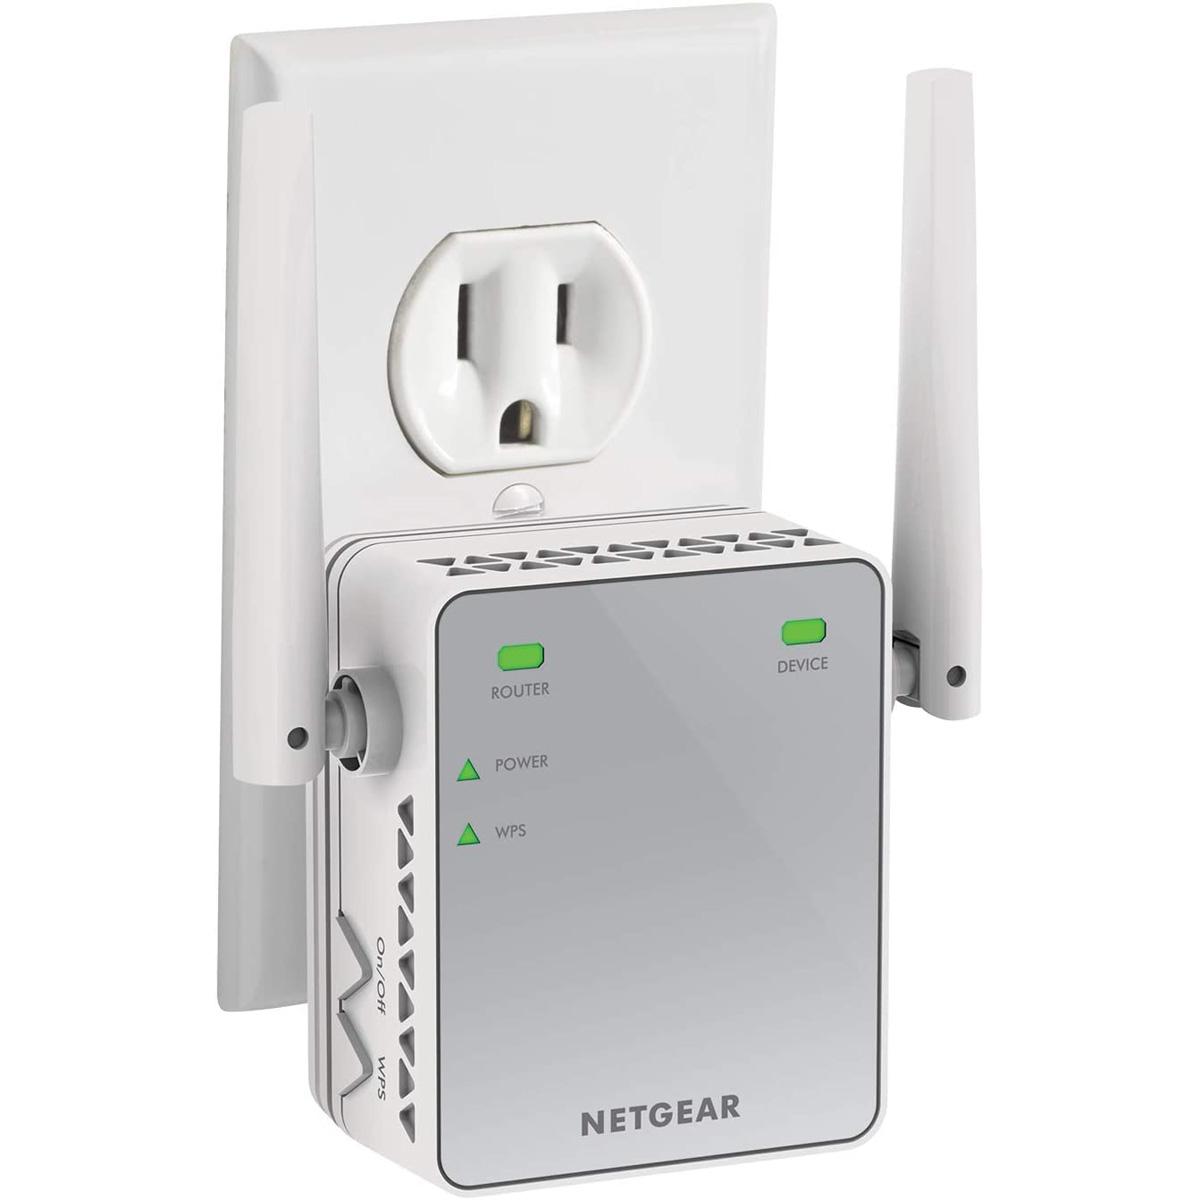 Netgear EX2700 N300 WiFi Range Extender for $12.99